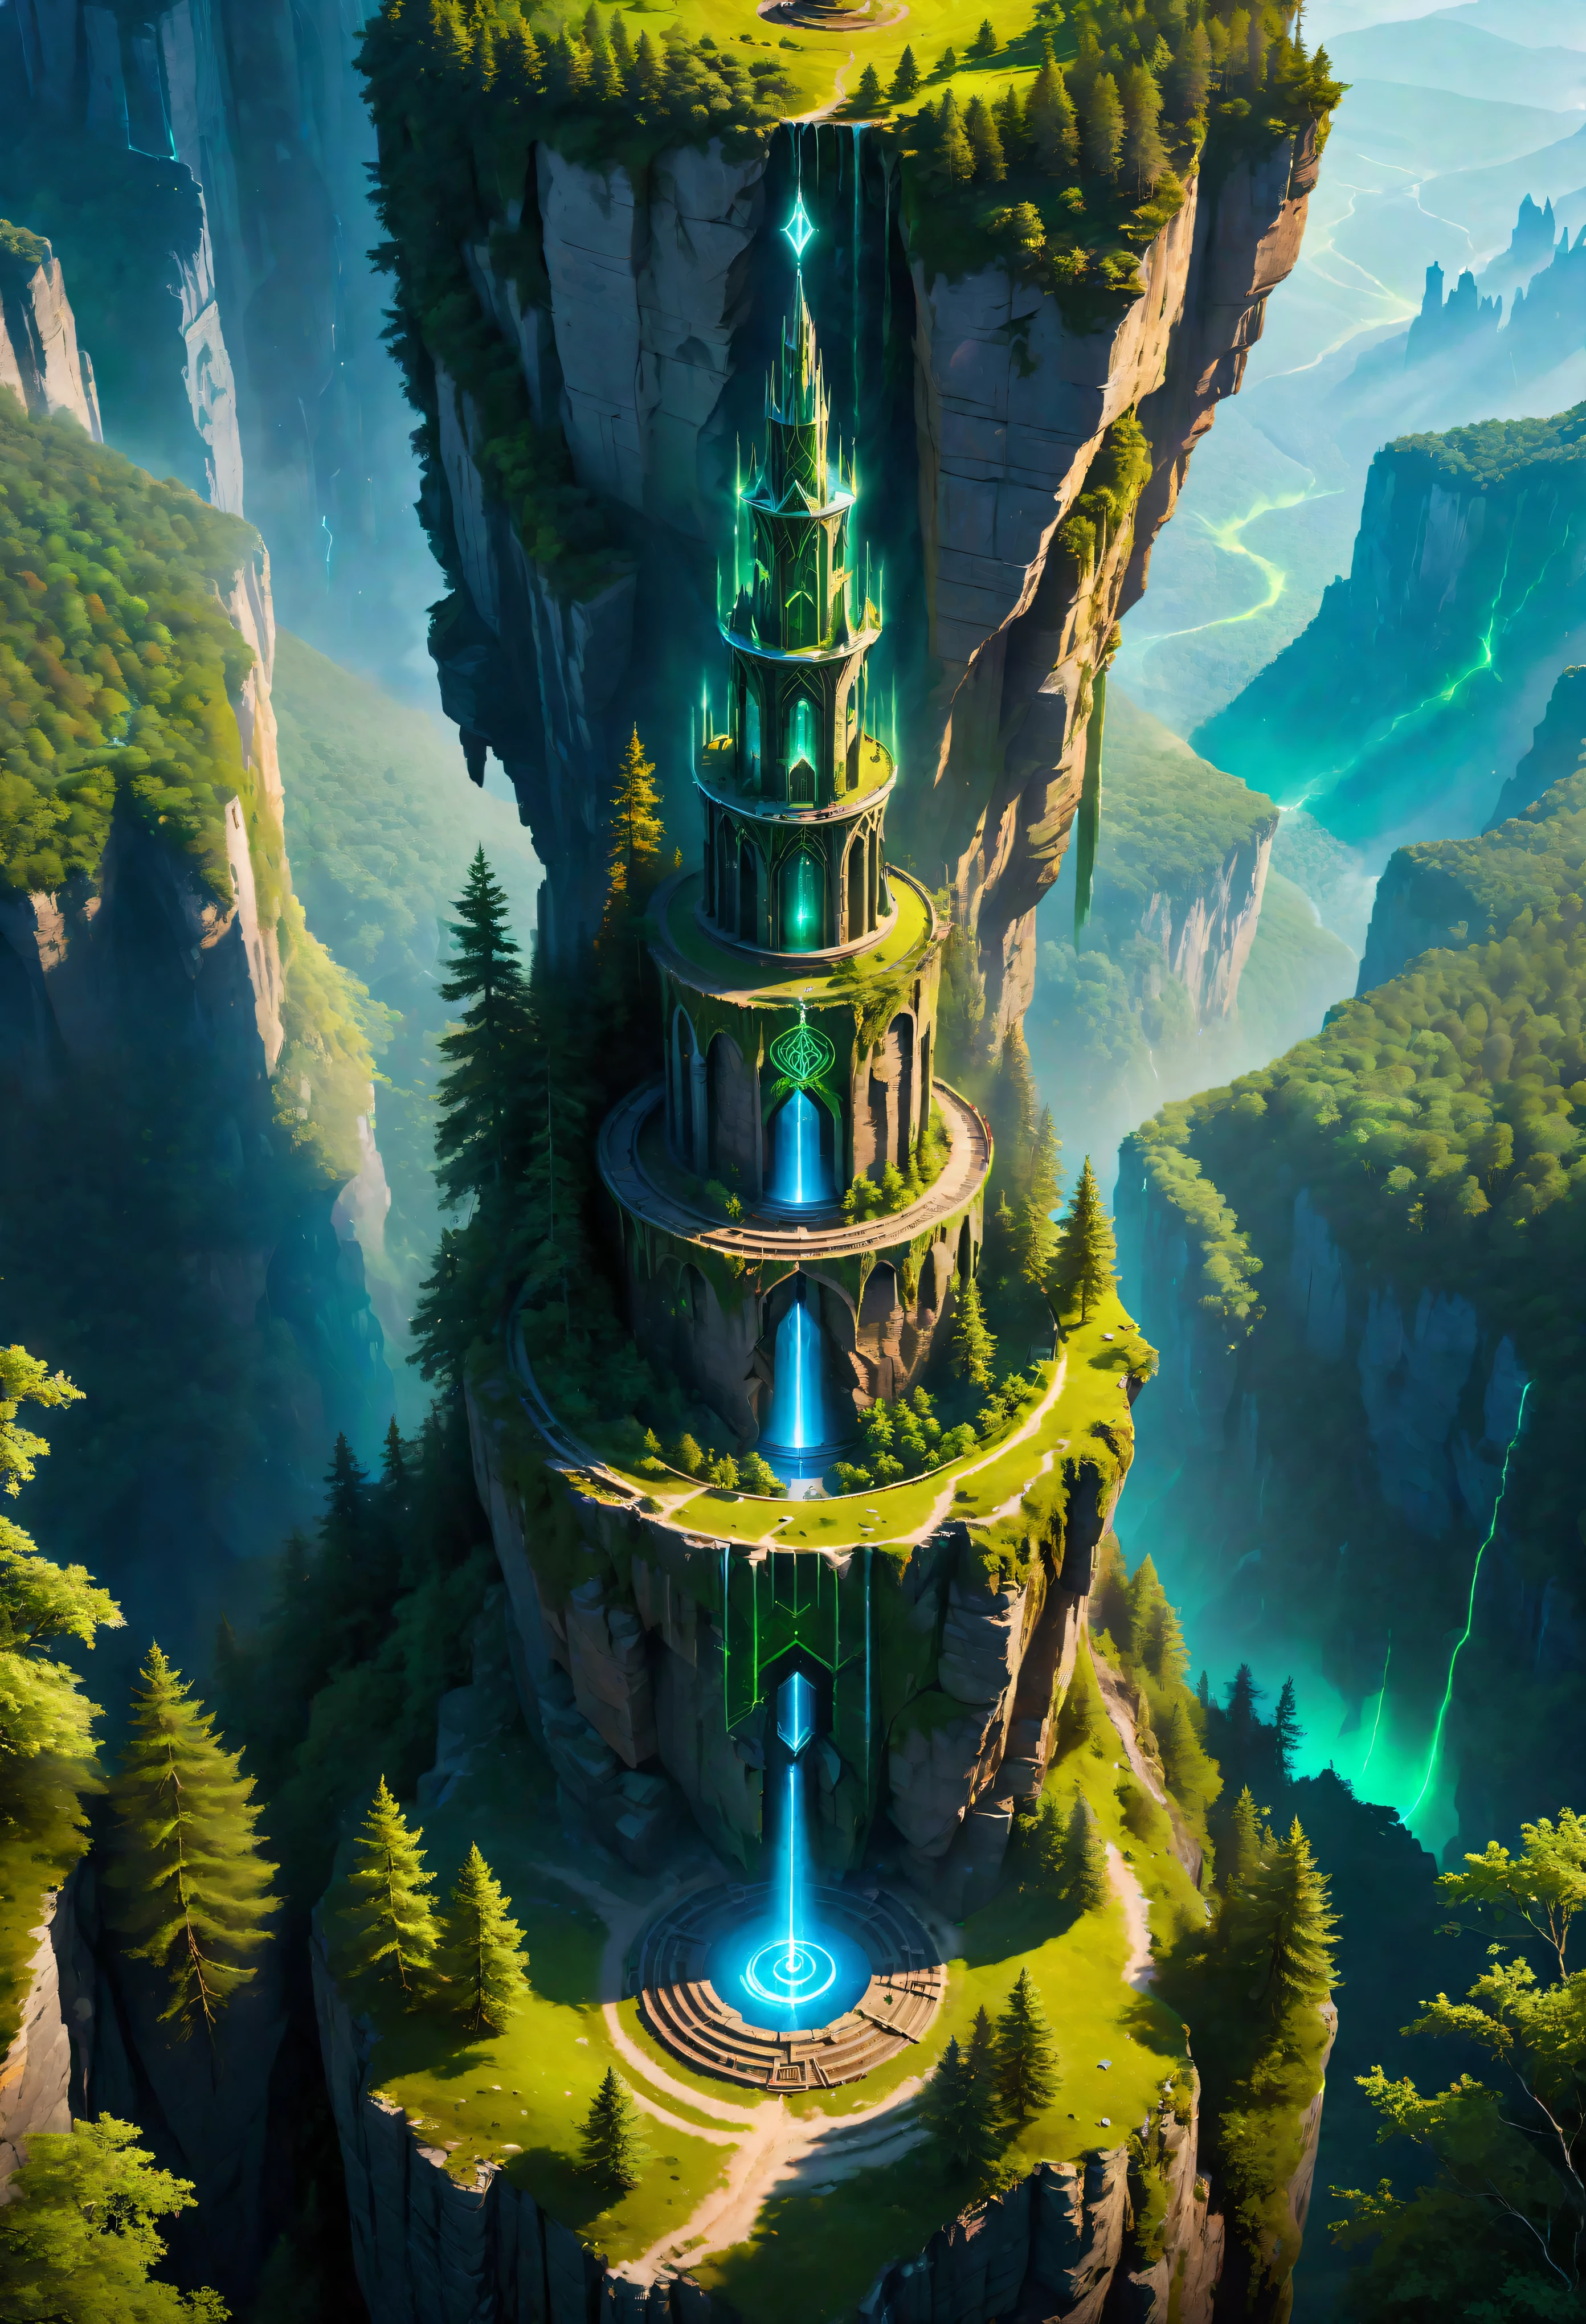 航空写真 of Towering steep and towering high 魔法の塔 in a cliff, 野生の森, 非対称の魔法陣の崖の峡谷, ((航空写真):1.2), (光るルーン), (光る印章), 自然環境との共存, 魔法陣タワー, lush colorful 野生の森, 美しい風景, 魔法の塔, 非常に詳細な, 最高品質, 傑作, 高解像度, 超現実的な, 8k, 上面図,  高角度ビュー, ブルーカラーパレット, ミニマリズム.